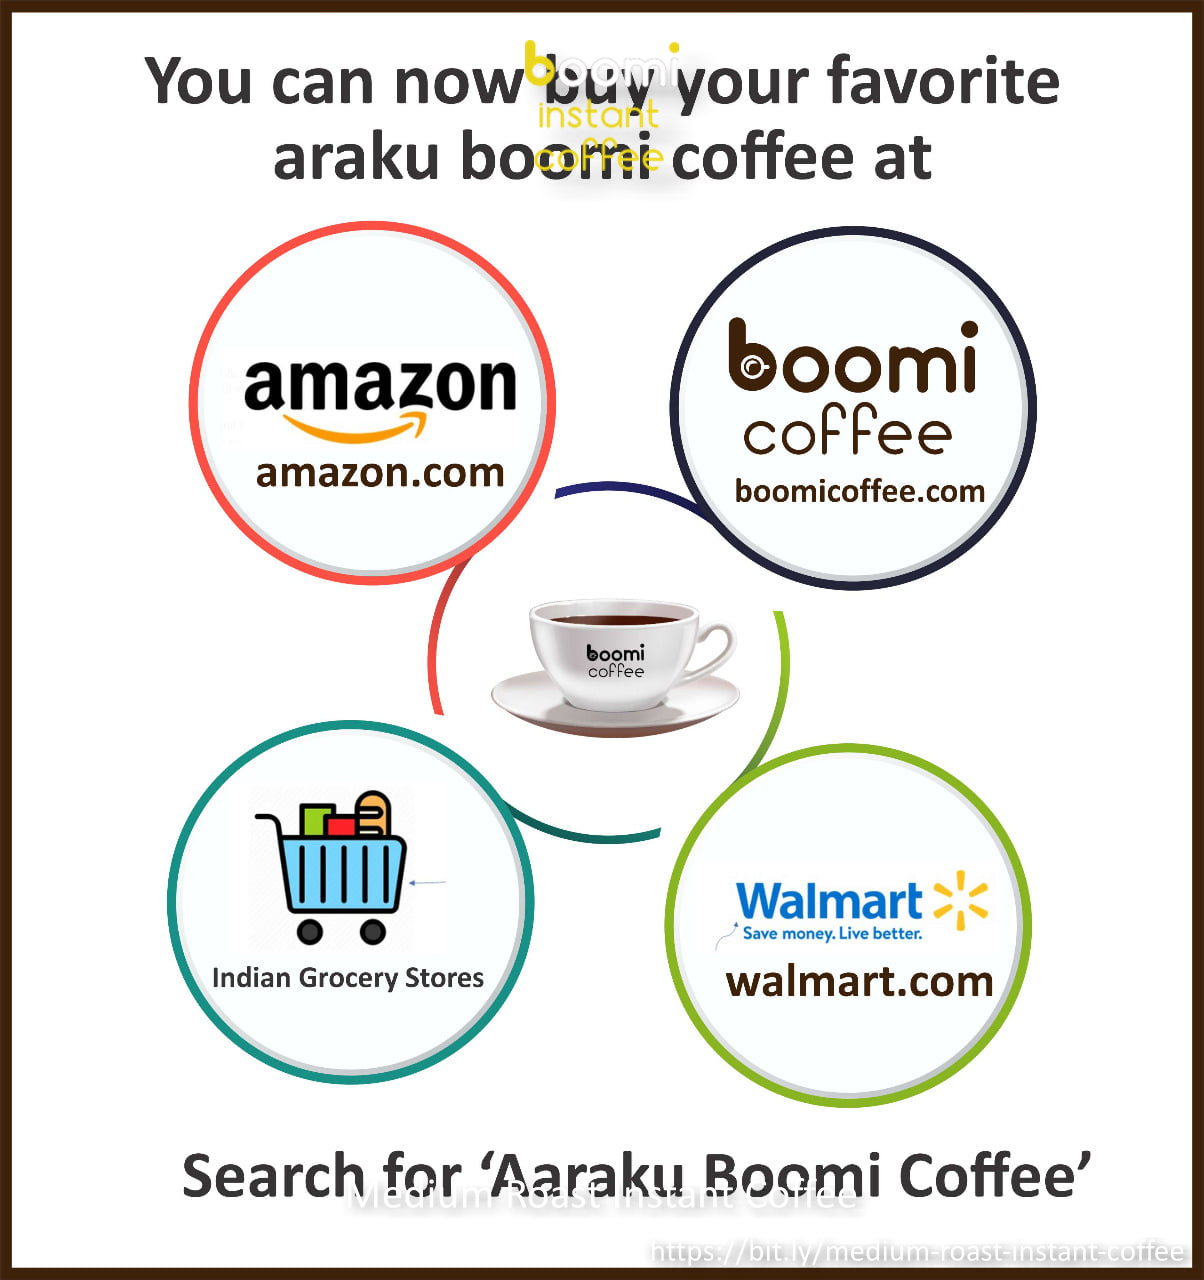 Boomi Coffee (M3B) (URL) - 10